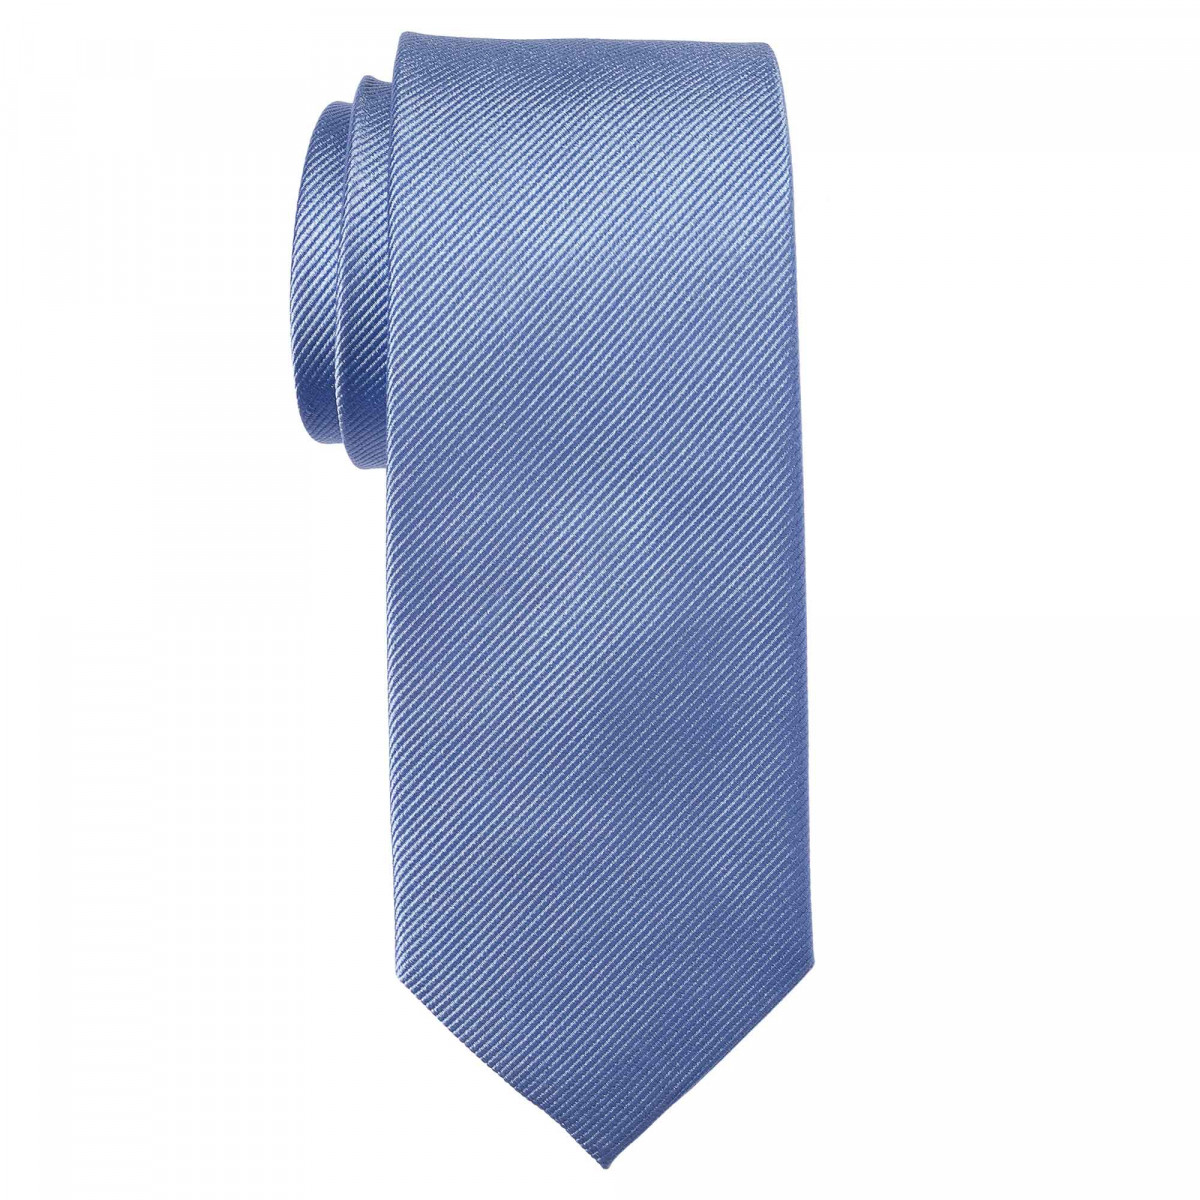 Cravate unie - Soie Bleu ciel